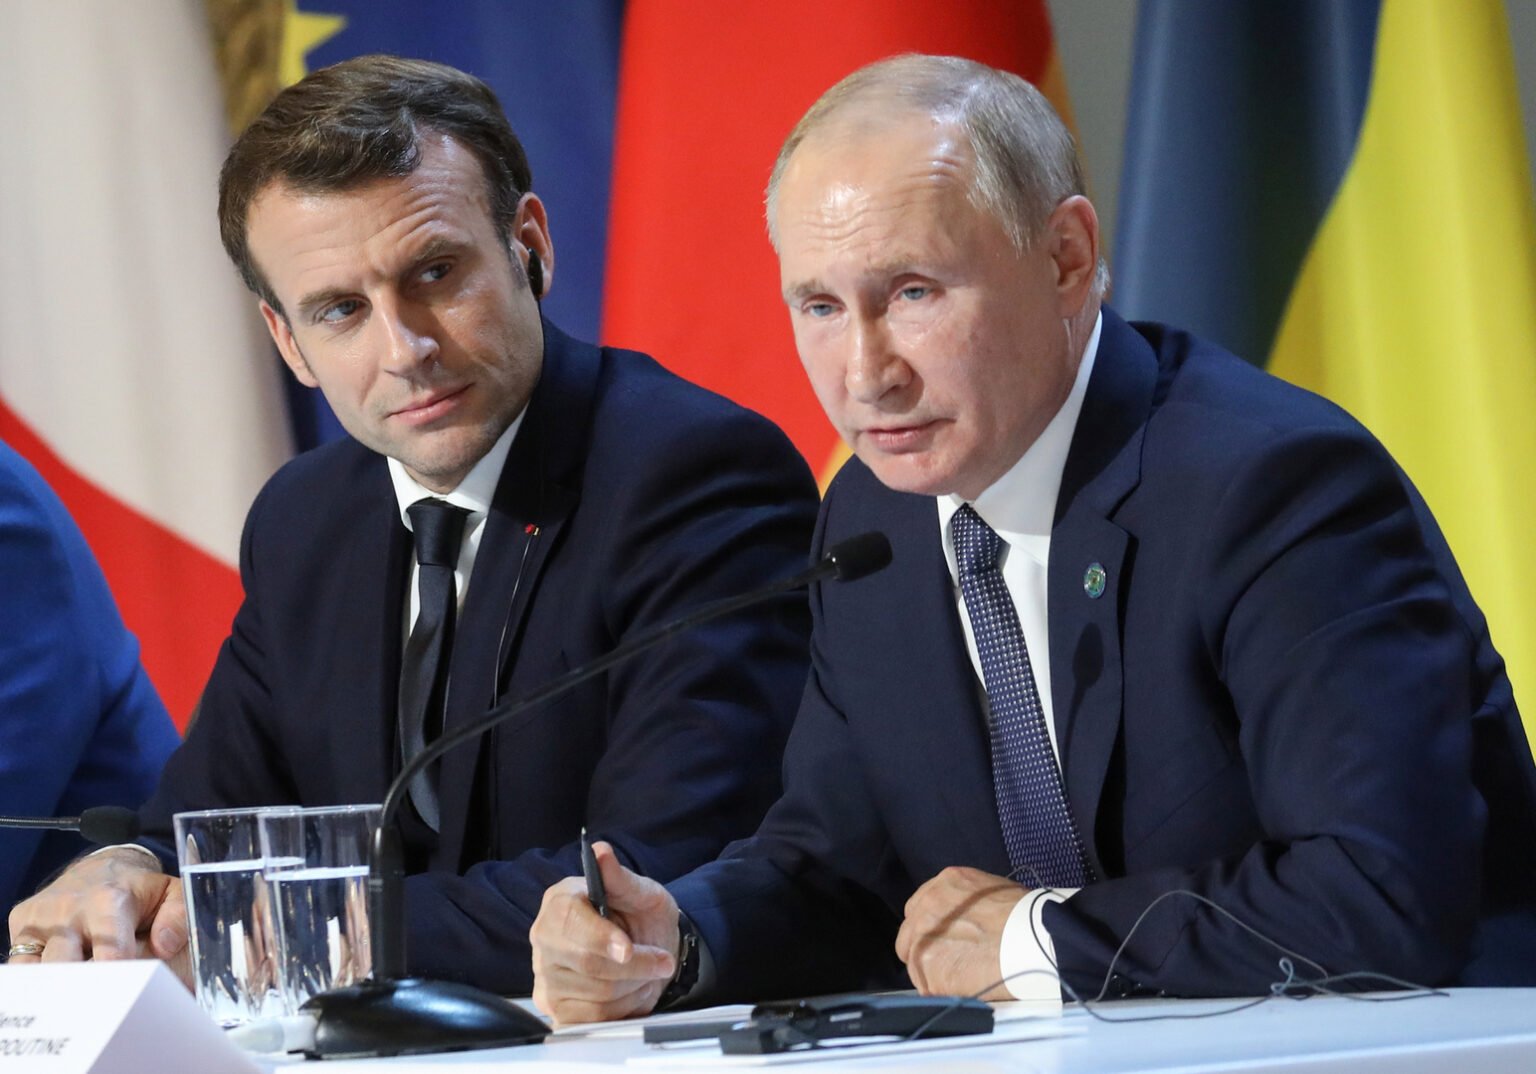 الرئيس الروسي يرفض طلبا للرئيس الفرنسي